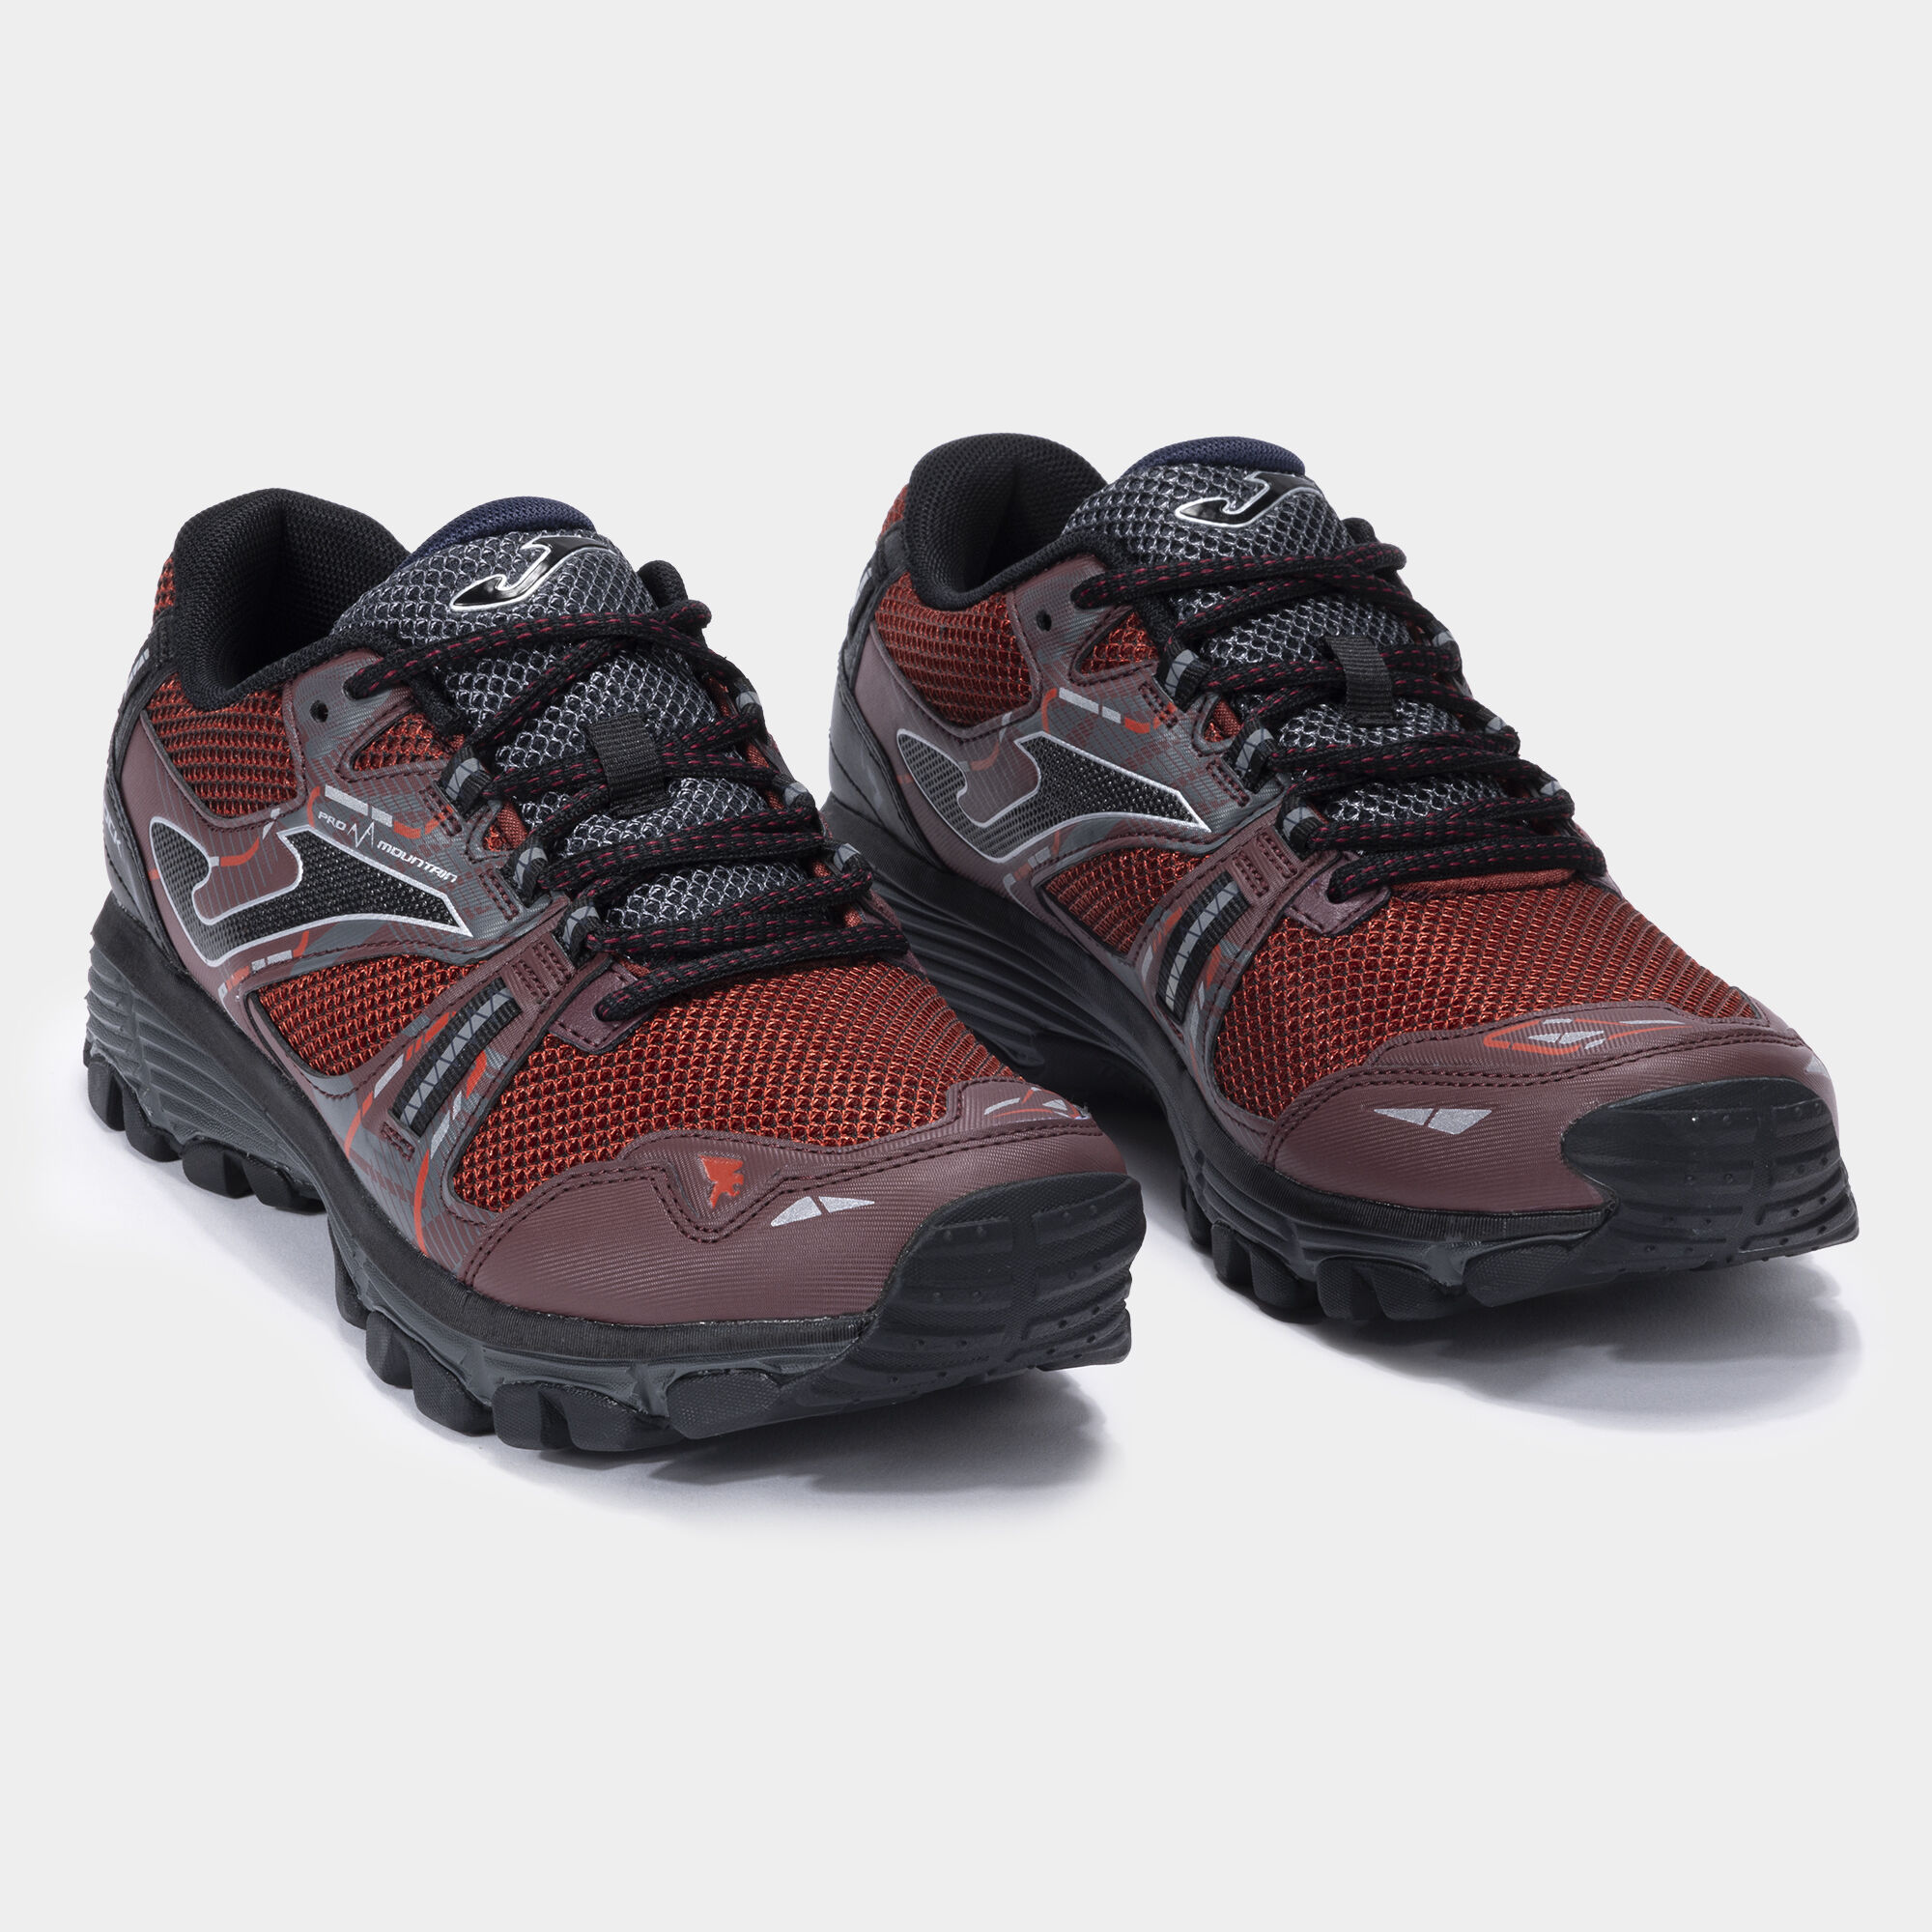 Pantofi sport trail Shock Men 24 bărbaȚi roșu